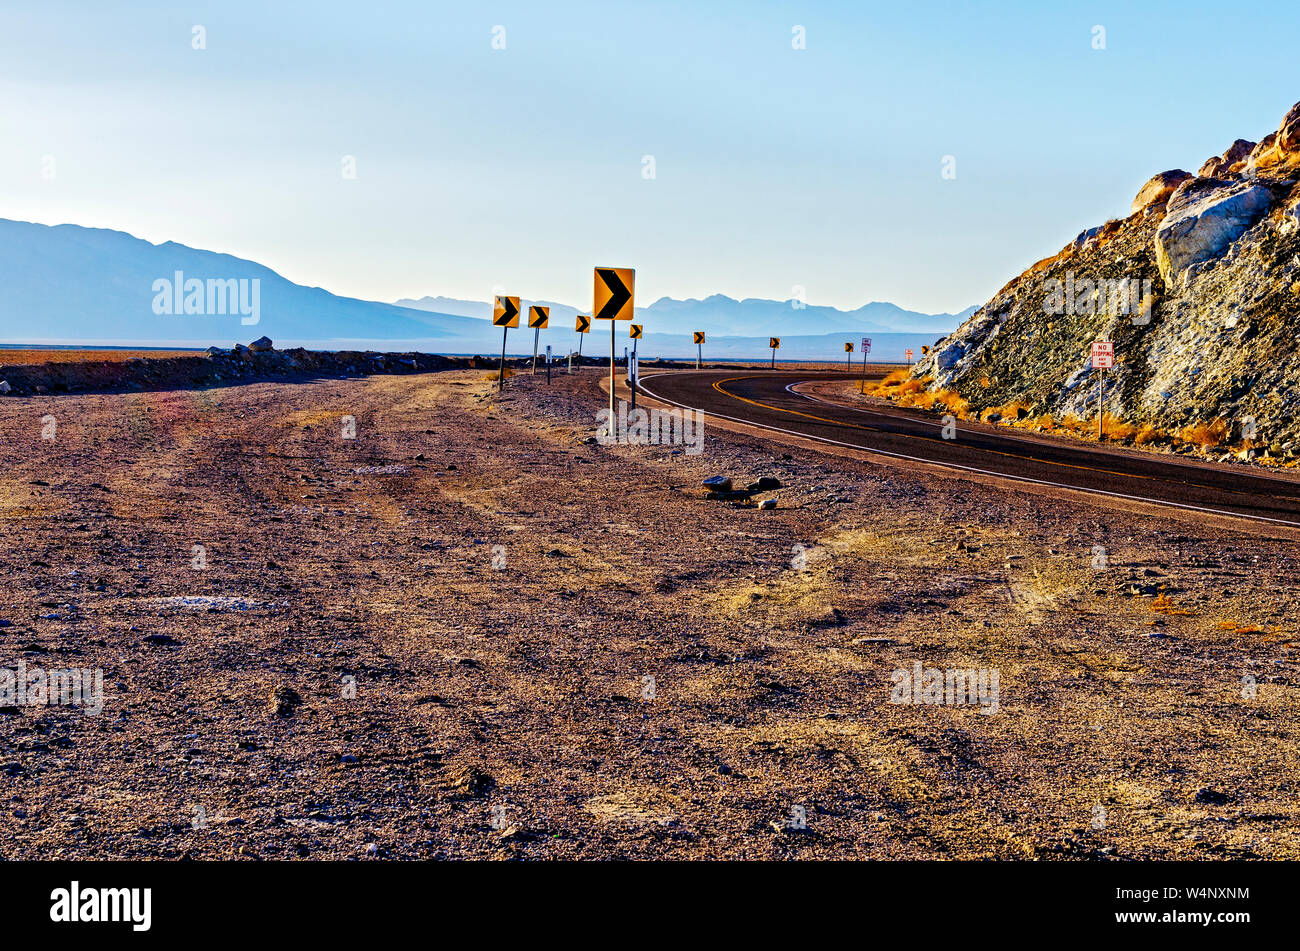 L'autoroute du désert courbant autour de paroi rocheuse avec ciel voilé au-delà des montagnes du désert. Flèche de signalisation indiquant curving road. Banque D'Images